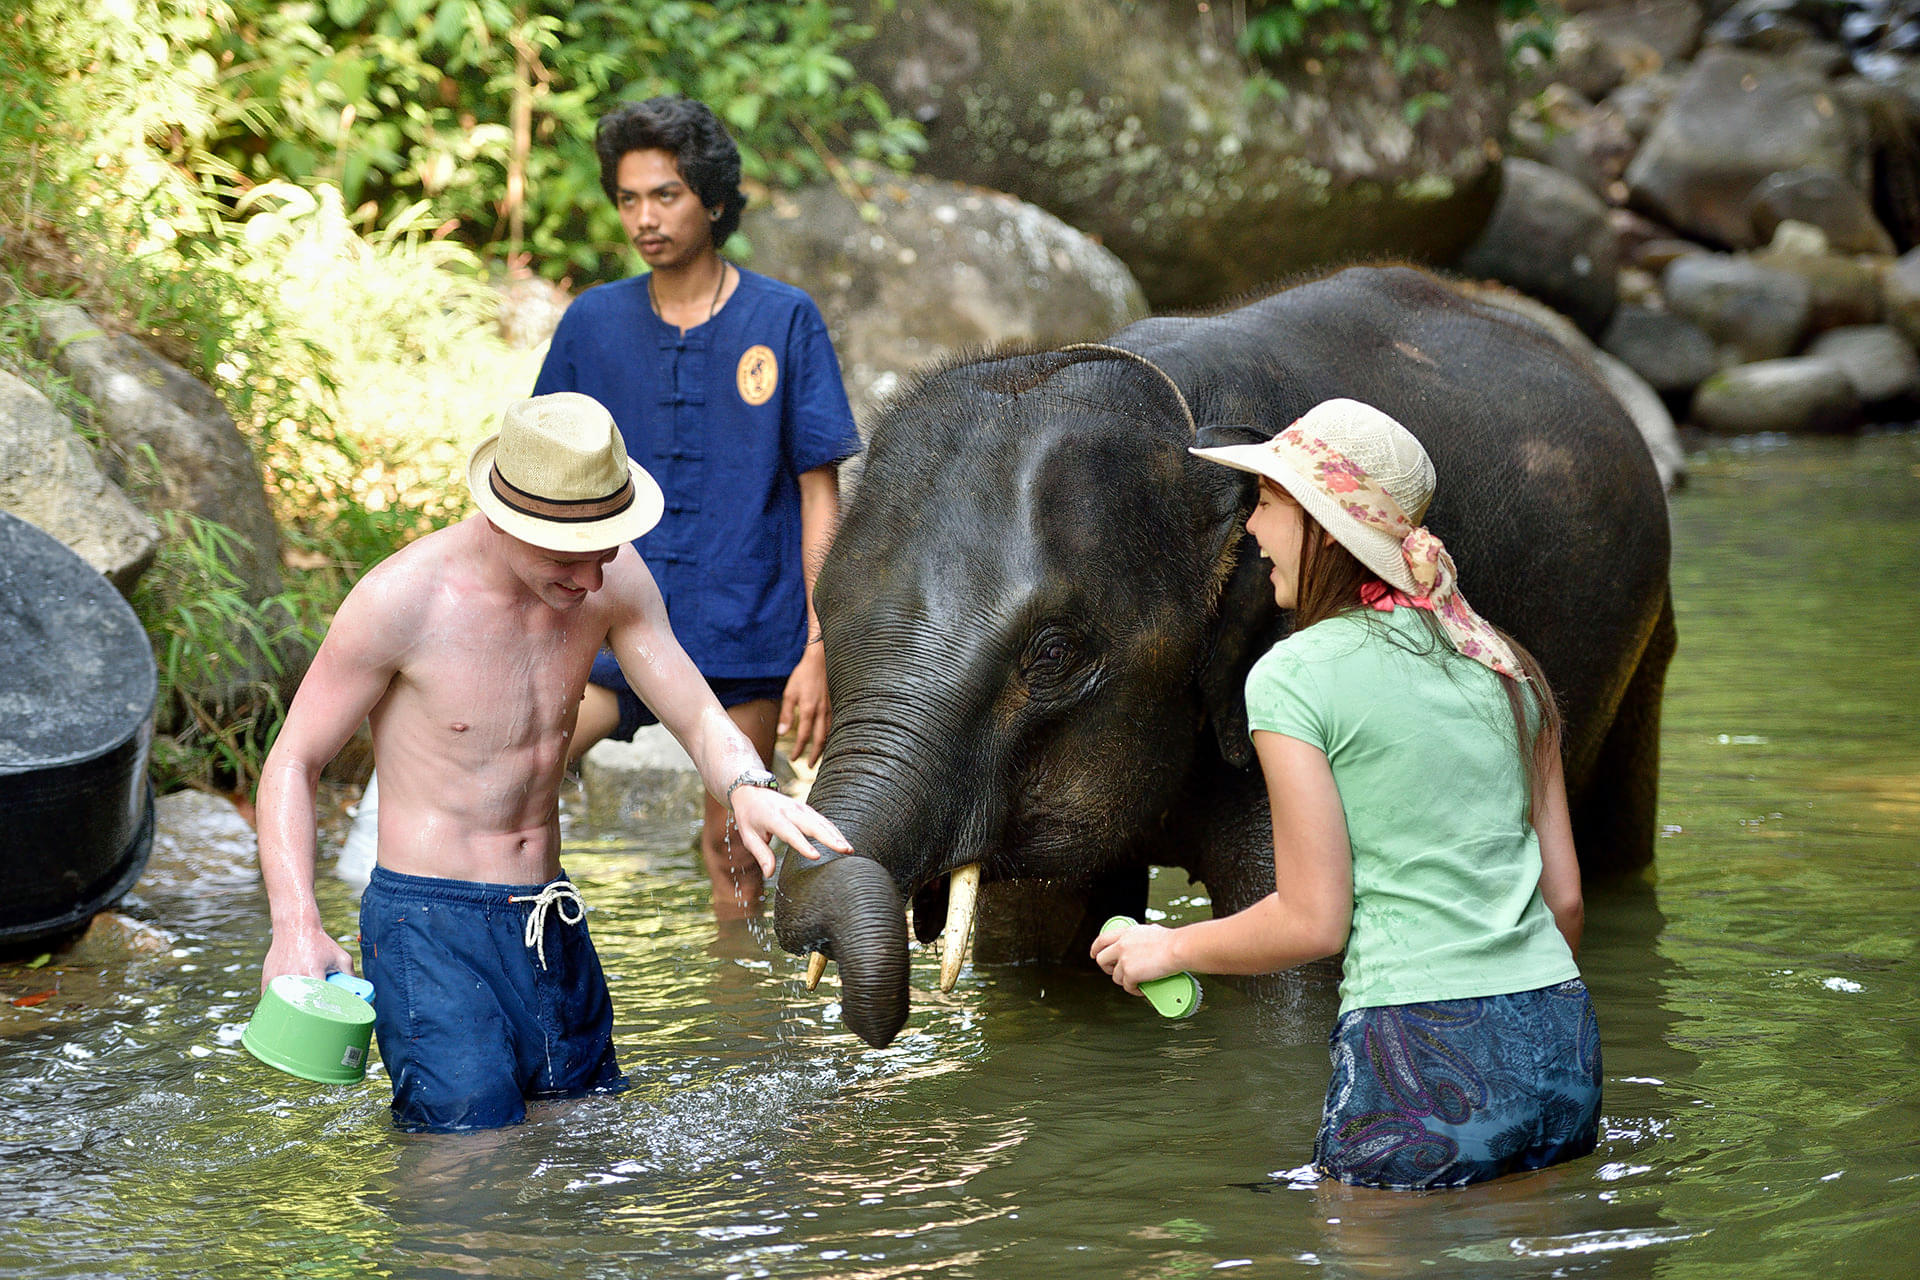 Bathe with the elephants